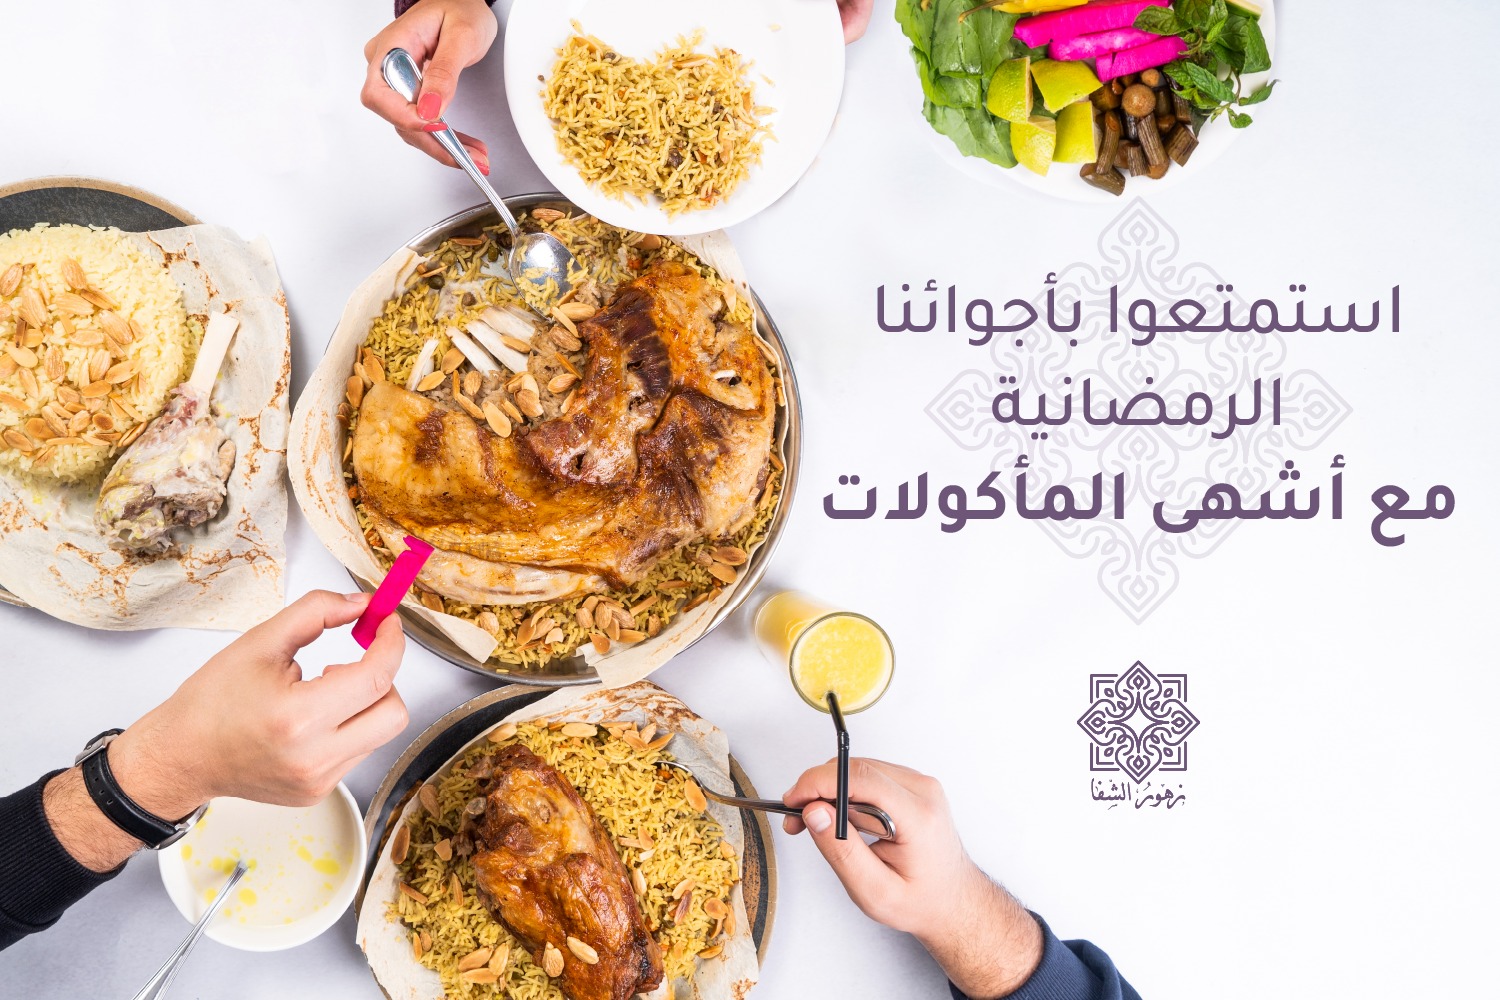 عروض المطاعم رمضان في الاردن 2022 - عروض مطعم ومشاوي زهور الشفا تلاع العلي رمضان 2022